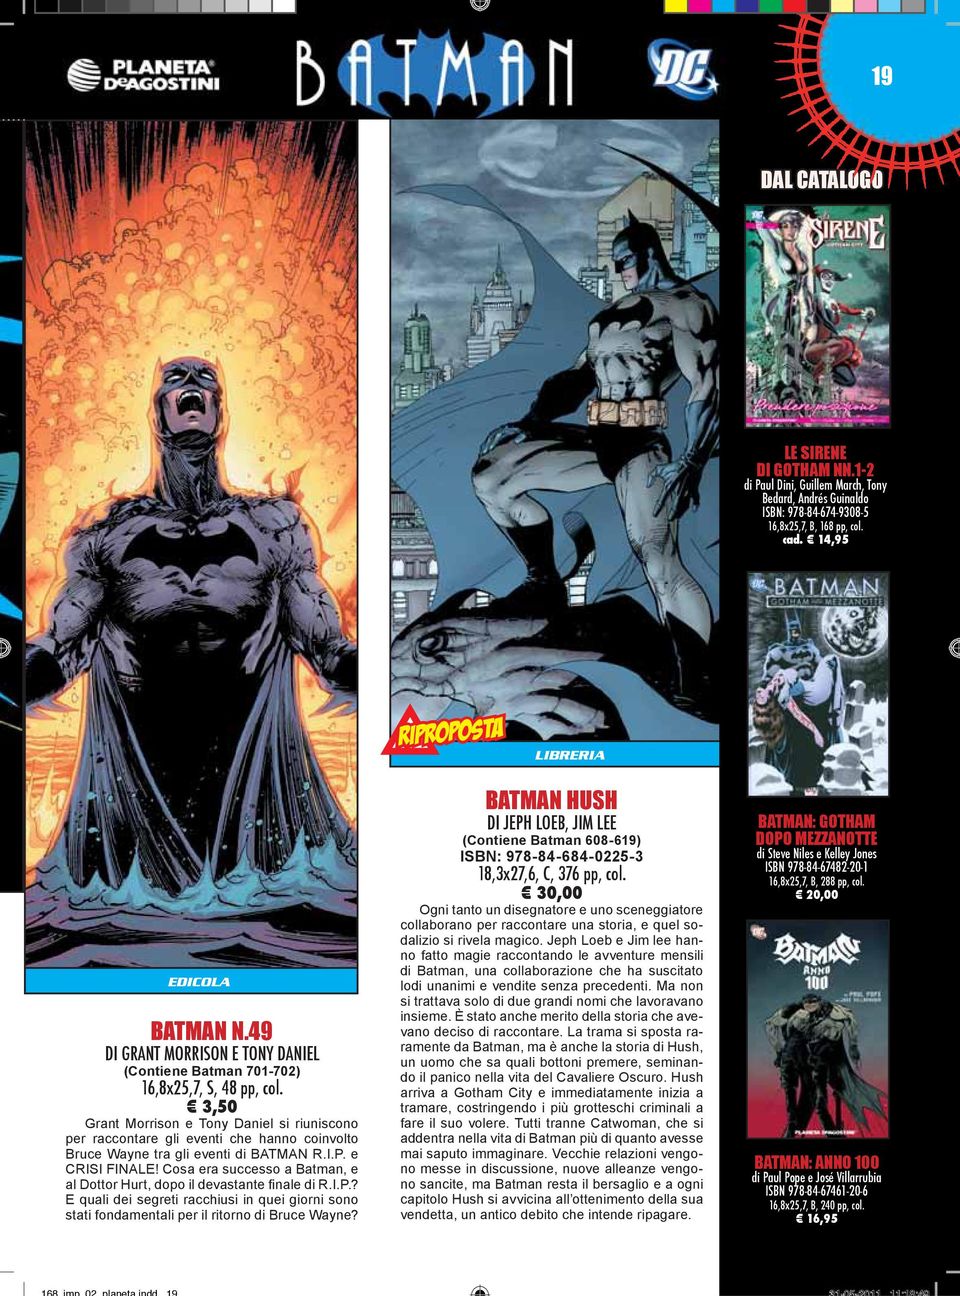 3,50 Grant Morrison e Tony Daniel si riuniscono per raccontare gli eventi che hanno coinvolto Bruce Wayne tra gli eventi di BATMAN R.I.P. e CRISI FINALE!